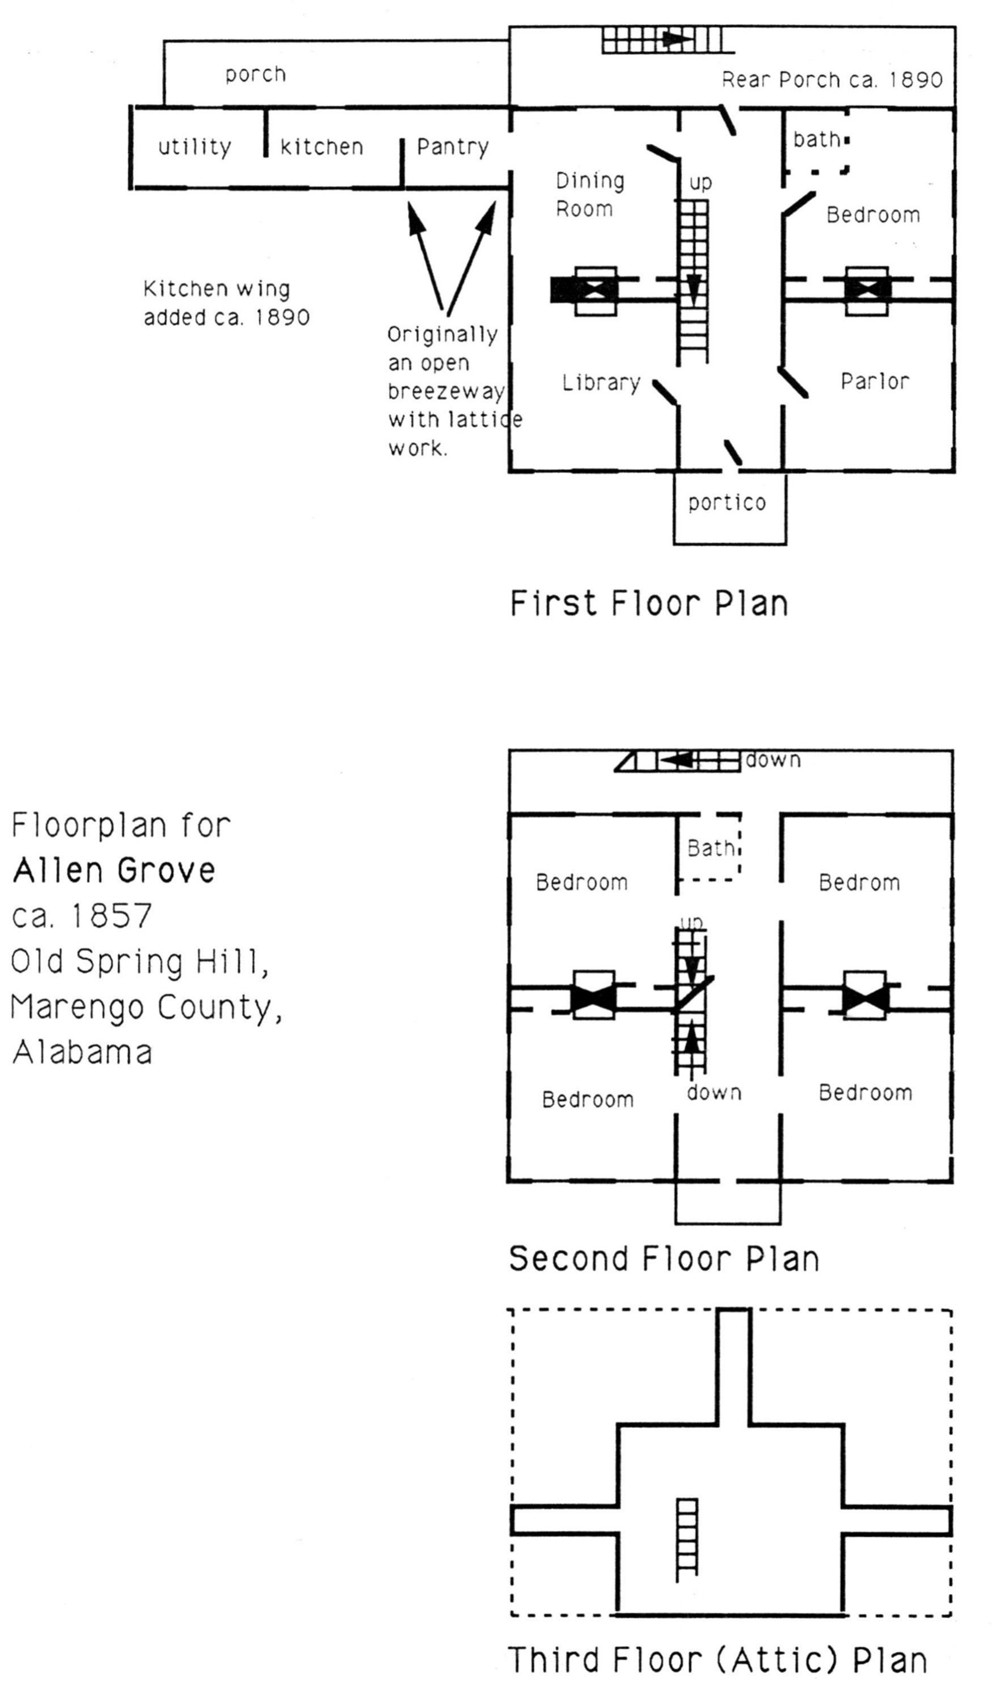 Allen Grove Plantation, Old Spring Hill Alabama Floor Plans